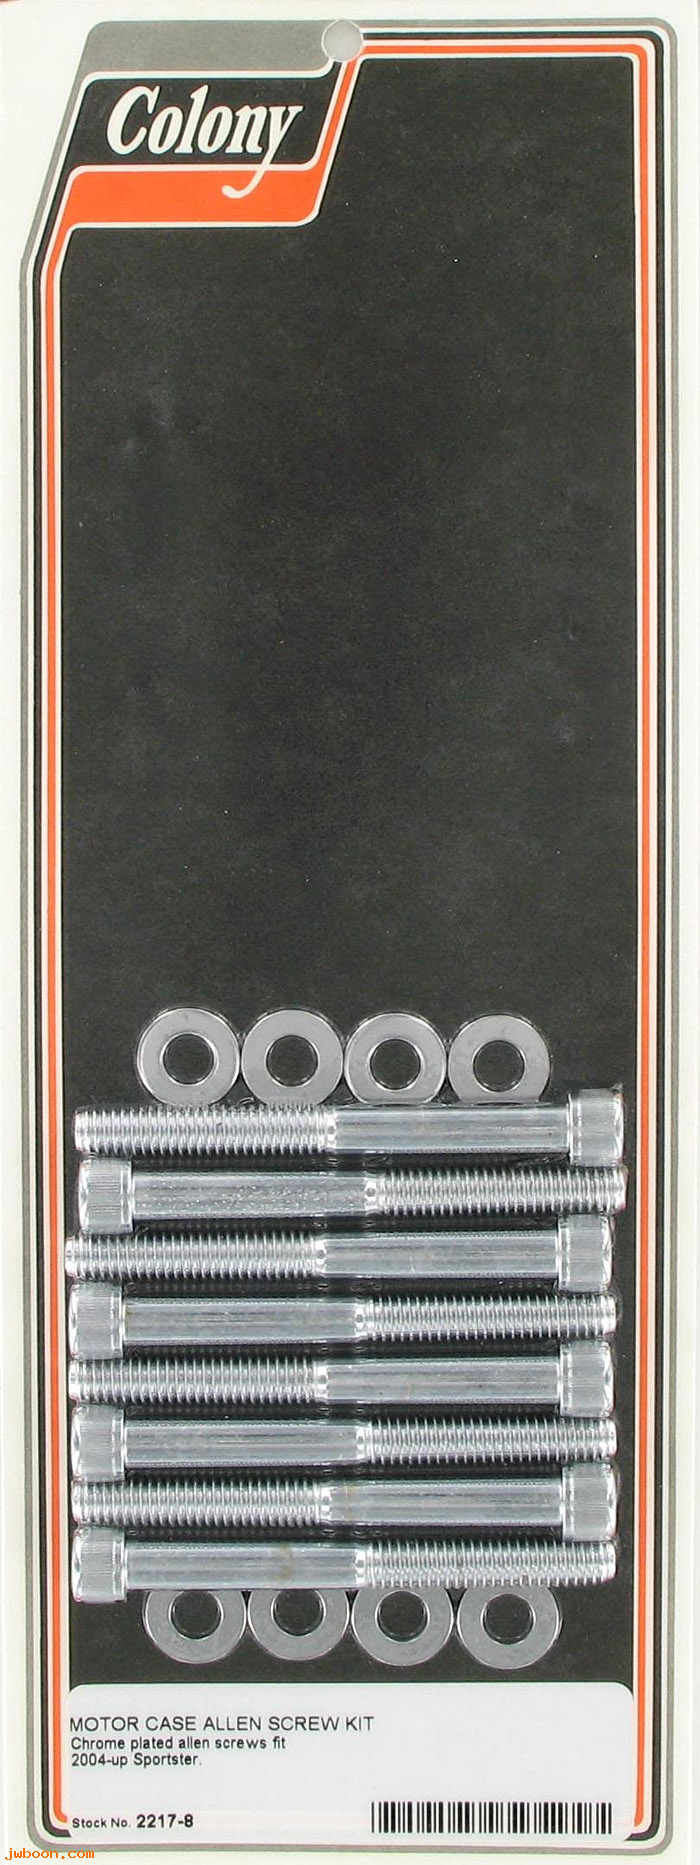 C 2217-8 (): Motor case screw kit - Allen, in stock - Sportster, XL 2004-